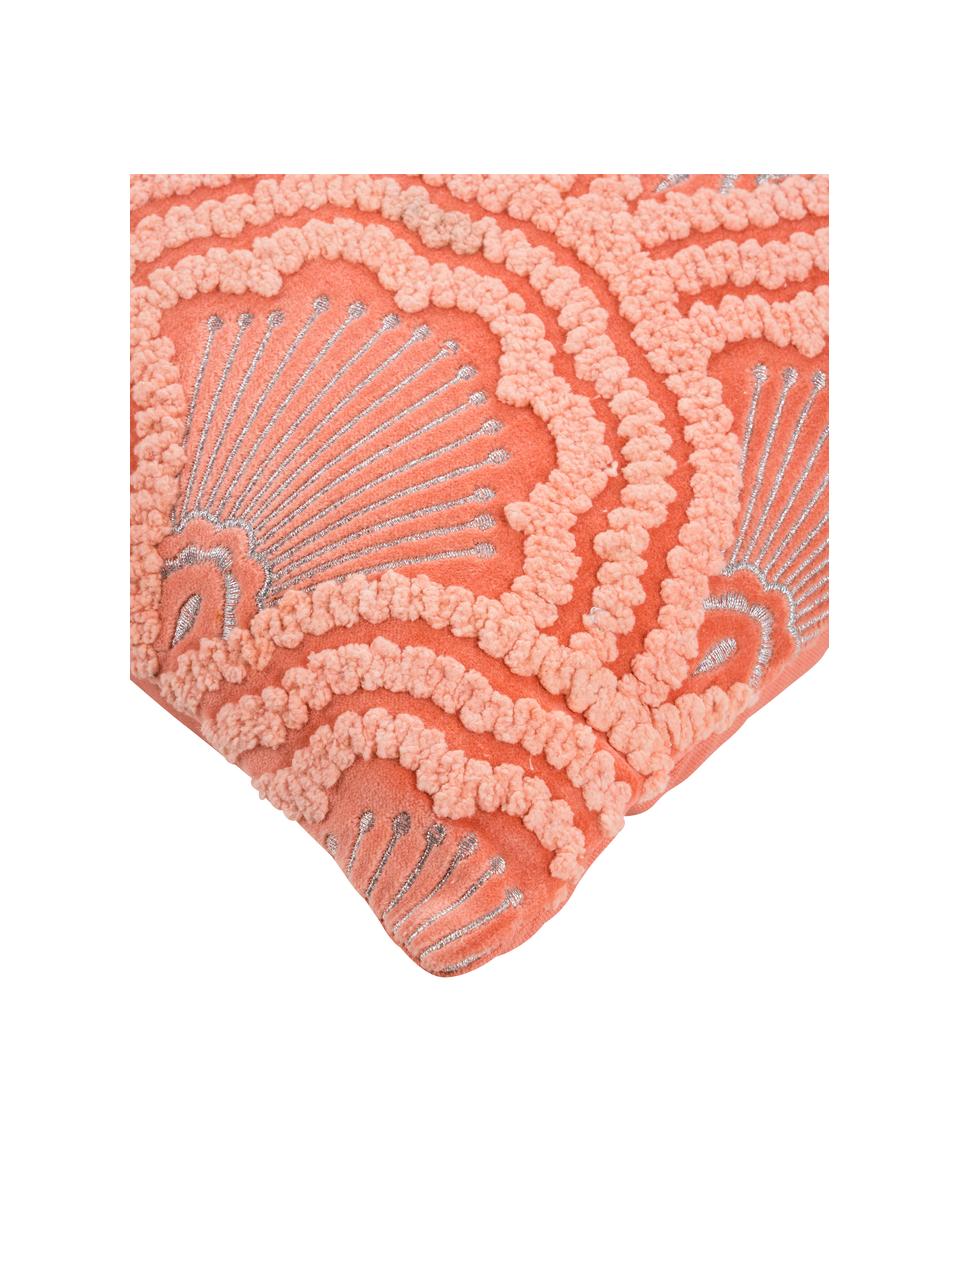 Funda de cojín bordada de terciopelo texturizada Chelsey, 100% terciopelo de algodón, Coral, An 45 x L 45